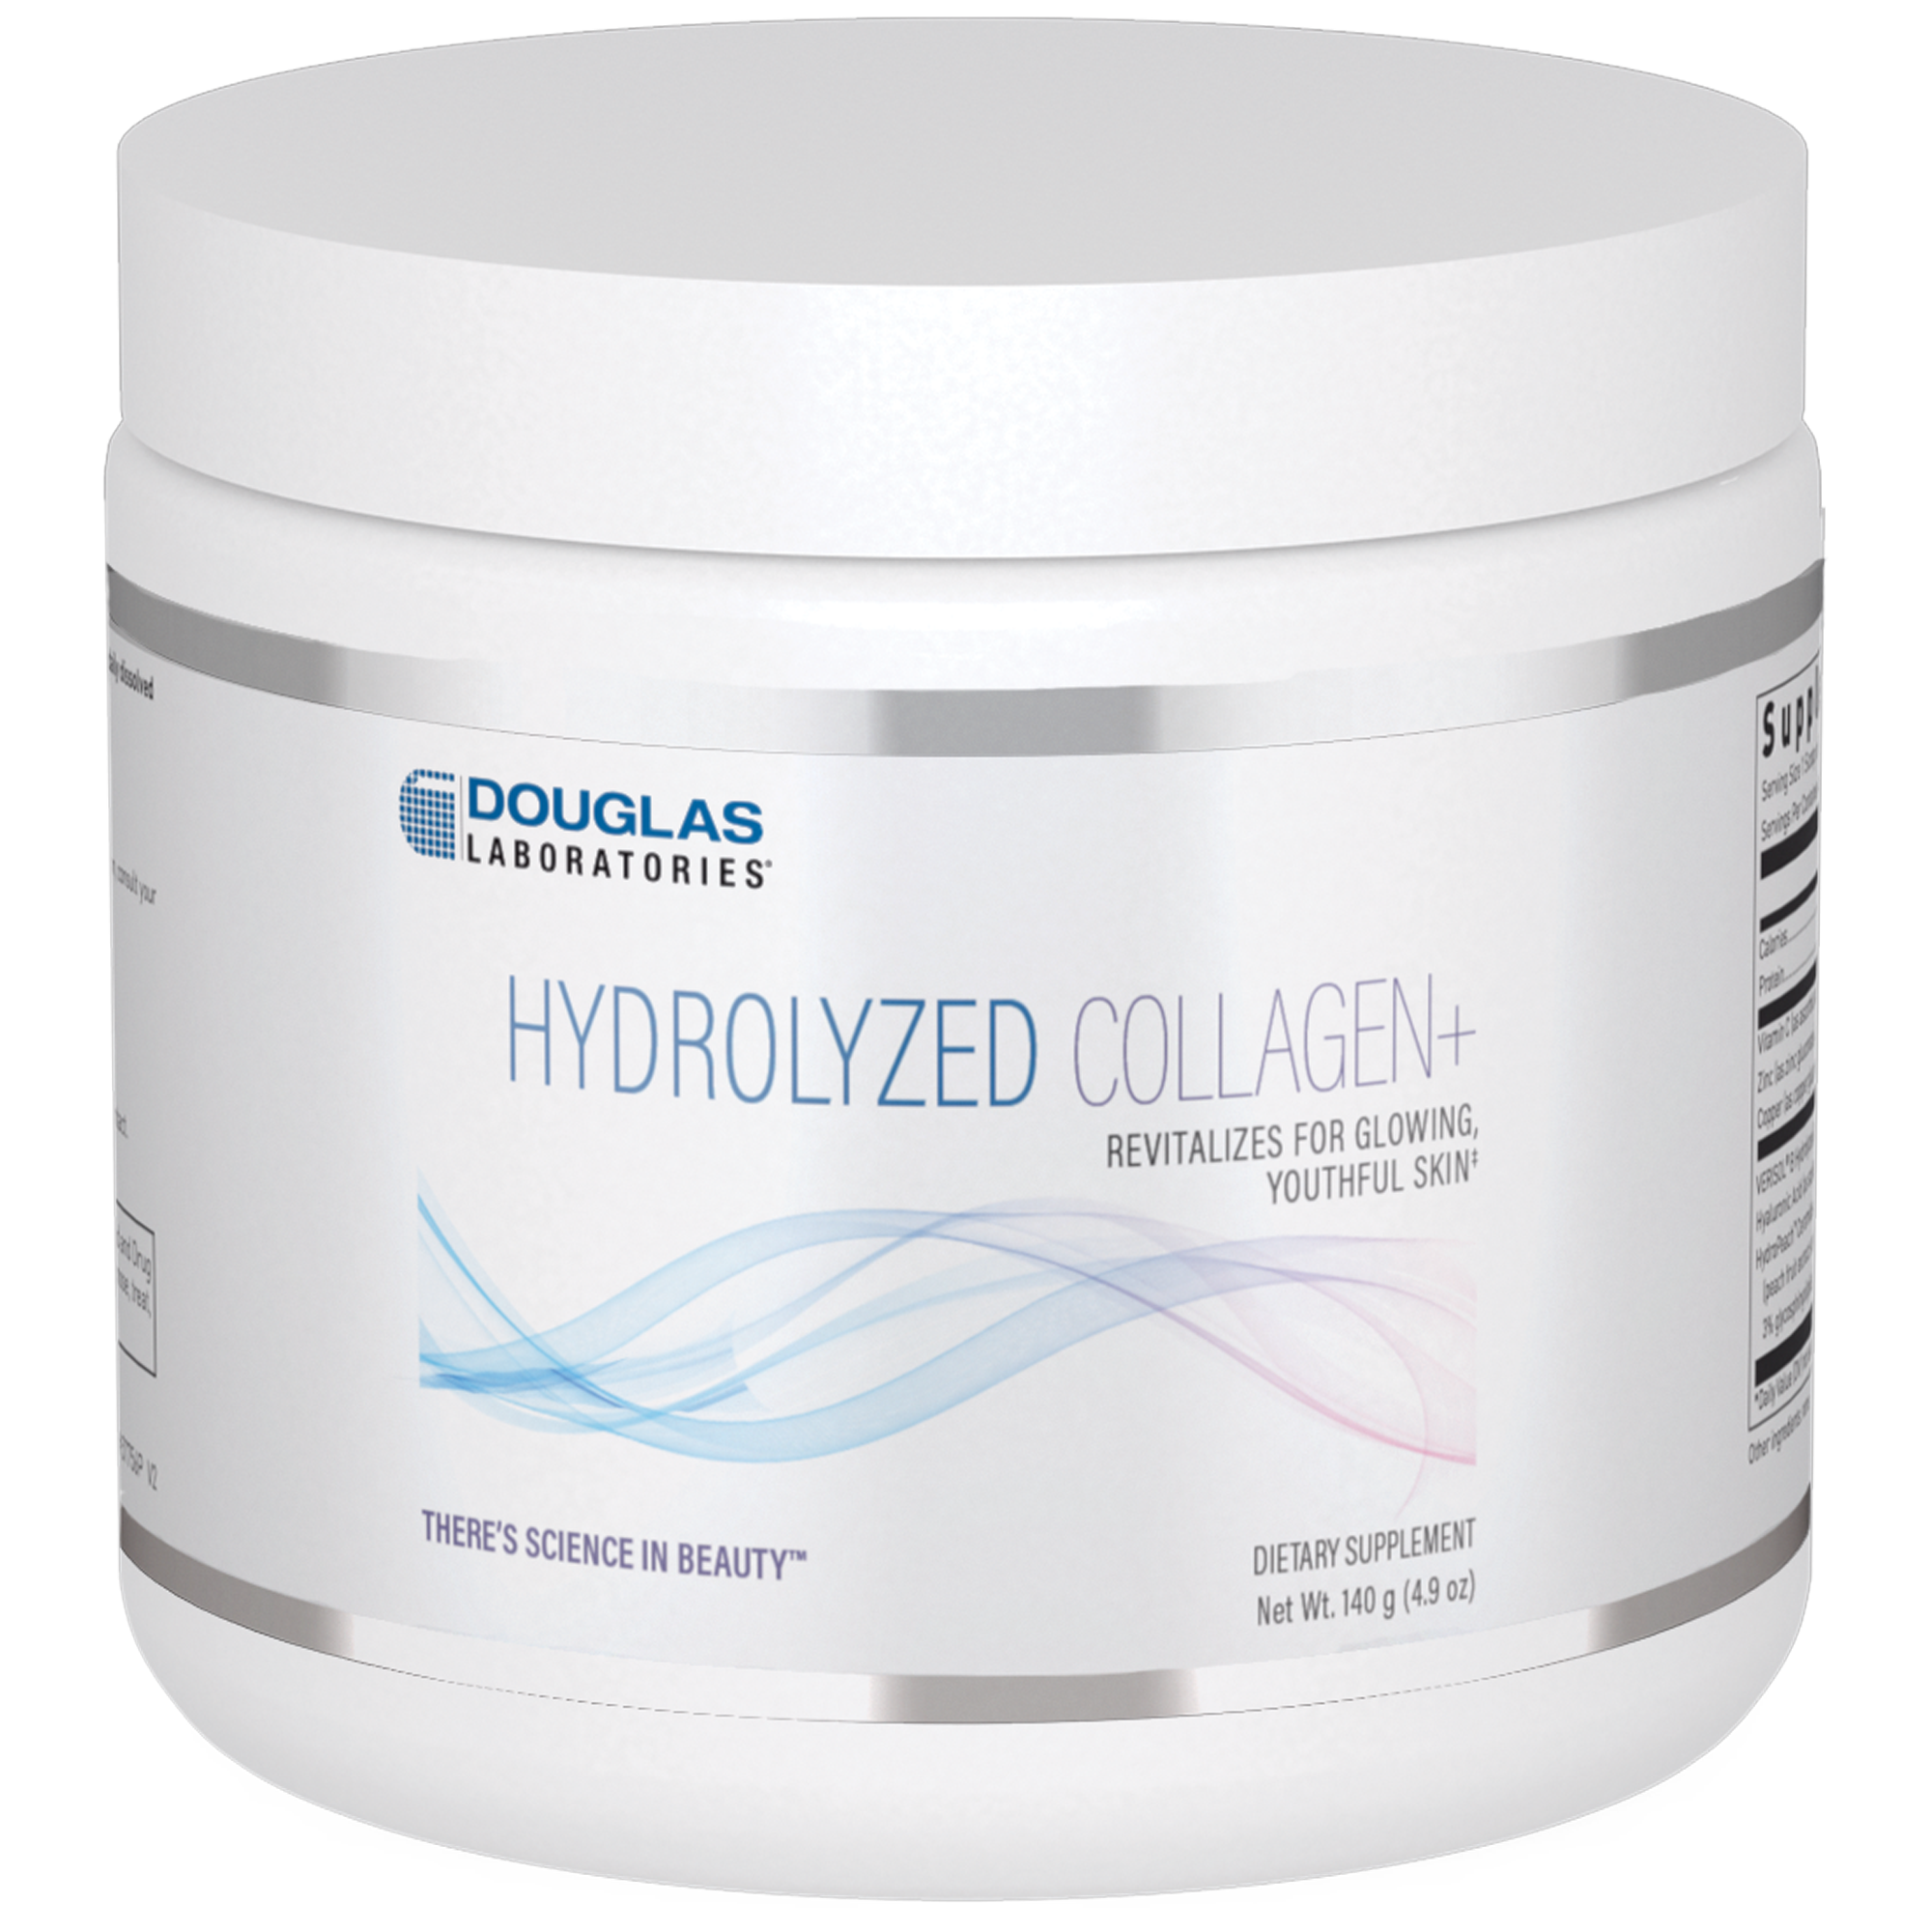 Hydrolyzed Collagen+